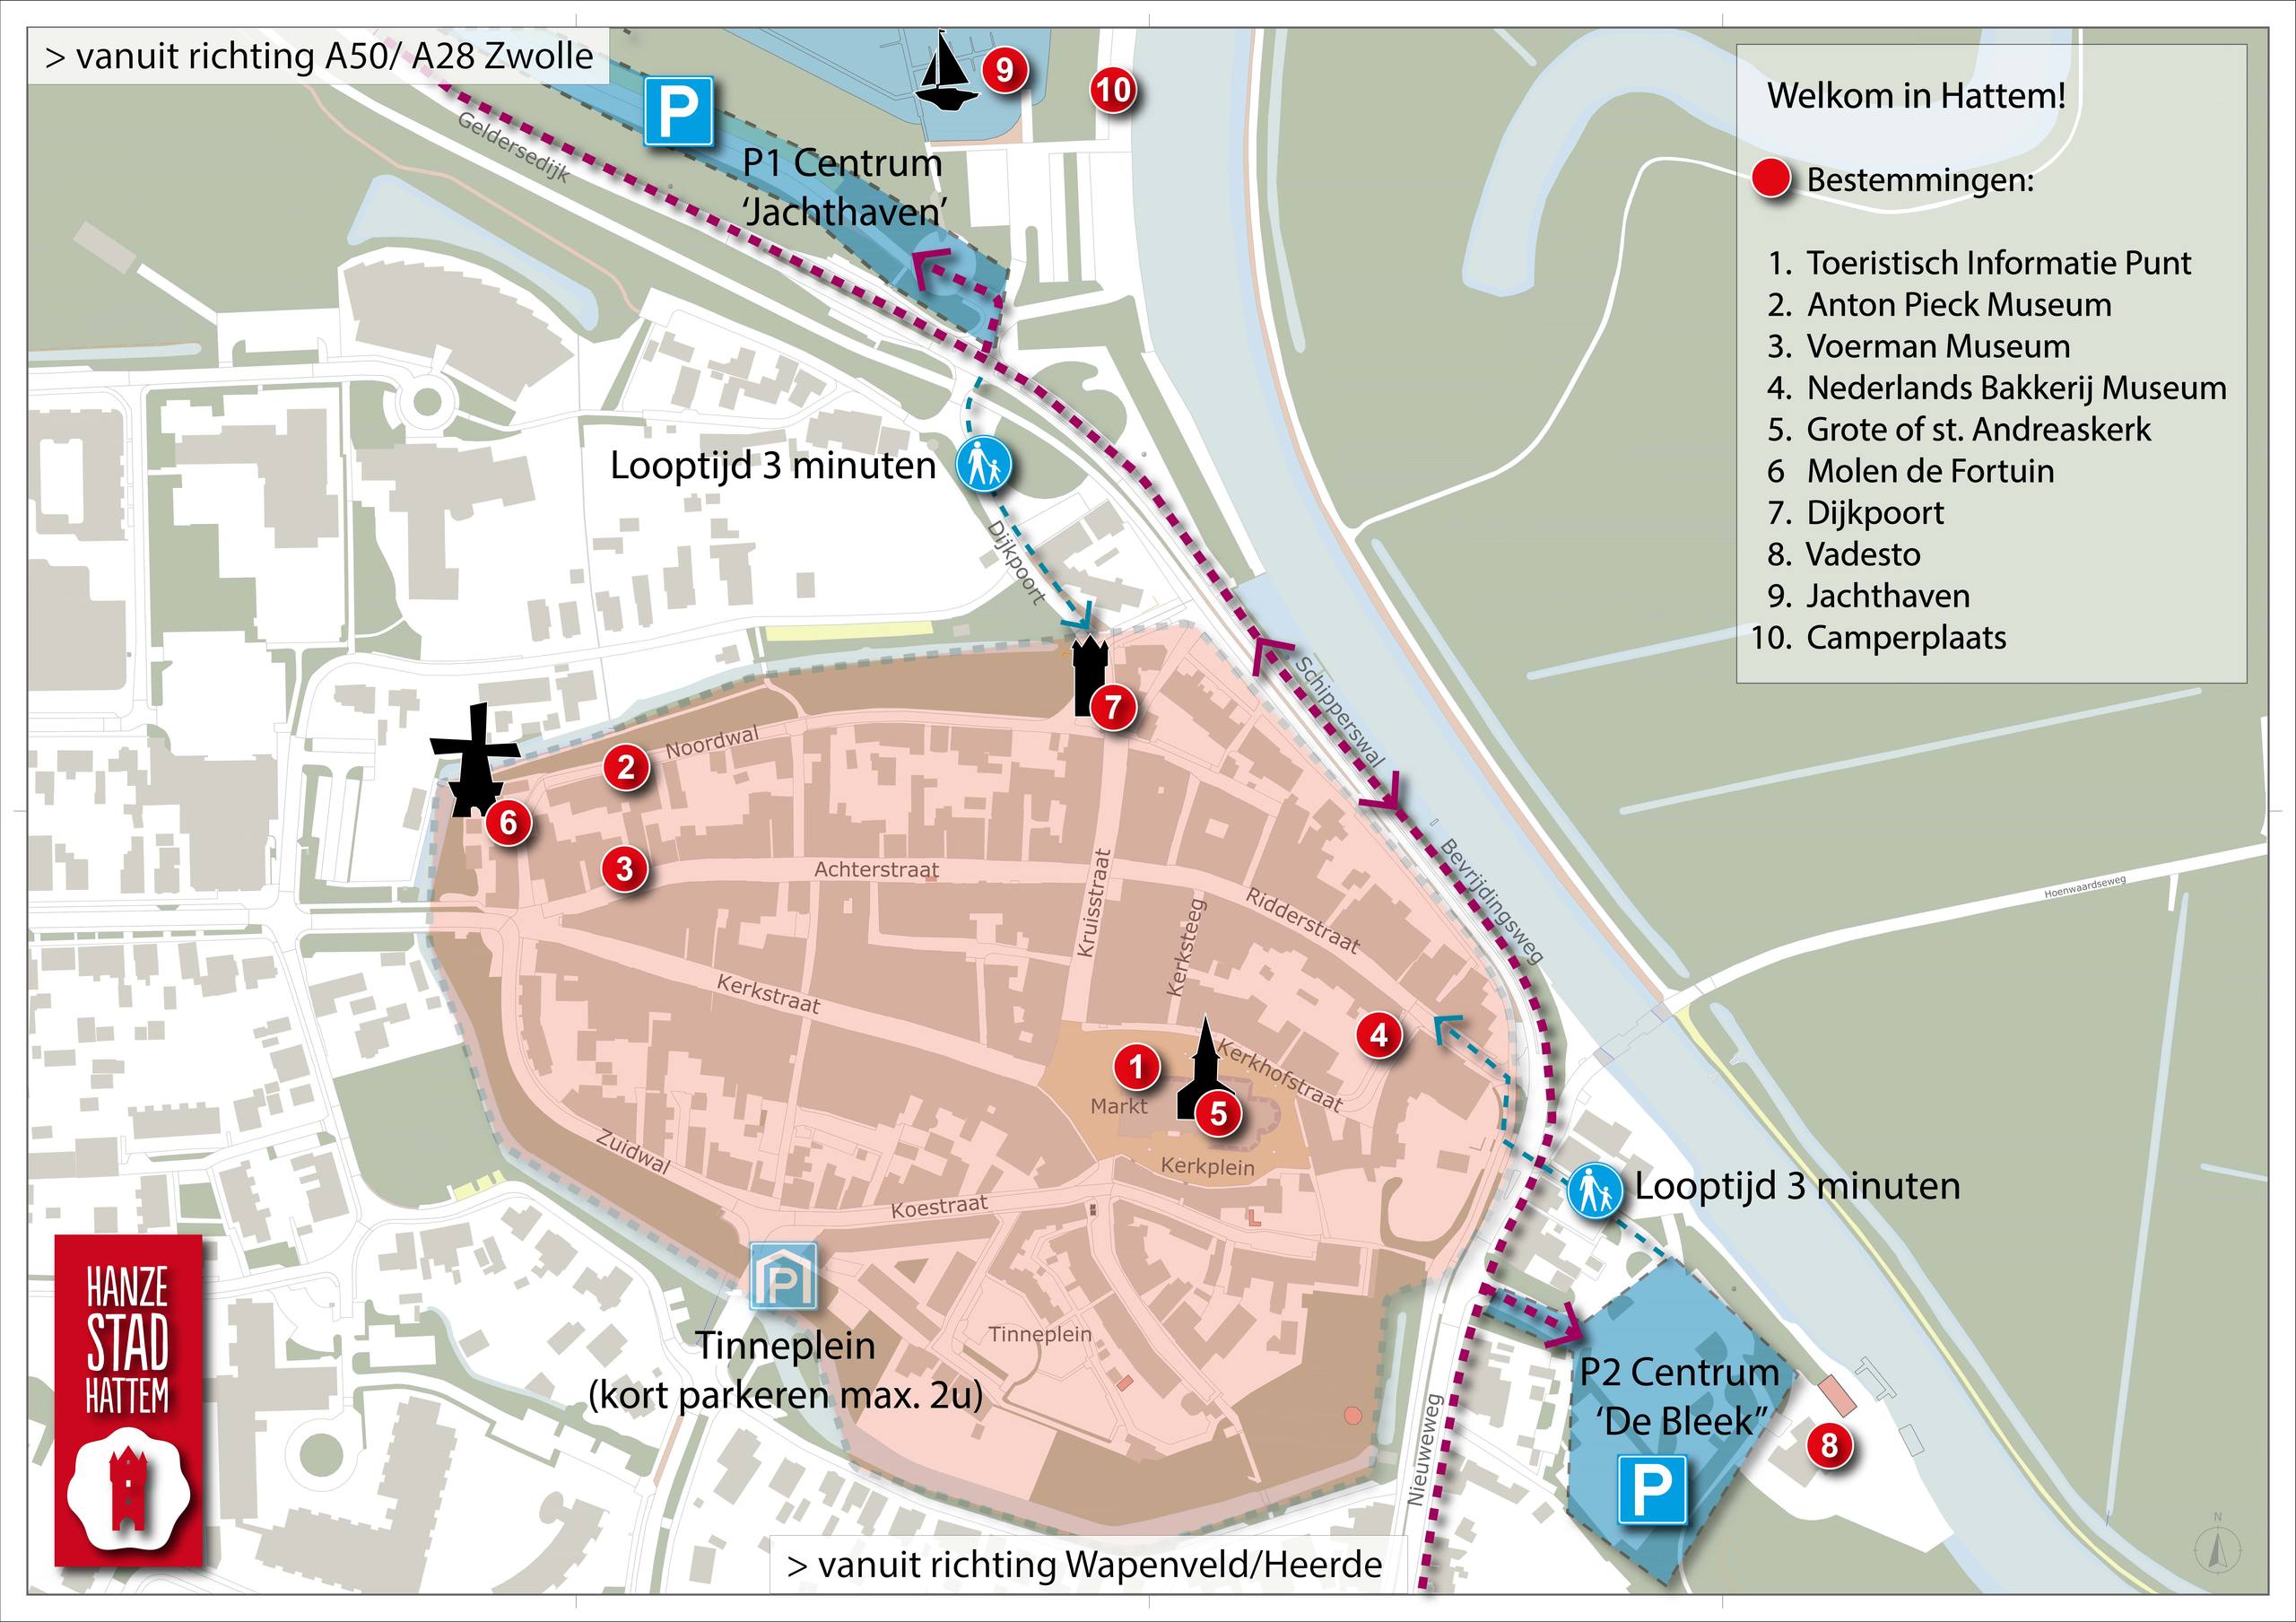 Een kaart van het centrum van Hattem, met daarop de parkeerplaatsen rondom het centrum. En een aantal belangrijke trekpleisters in het centrum. 